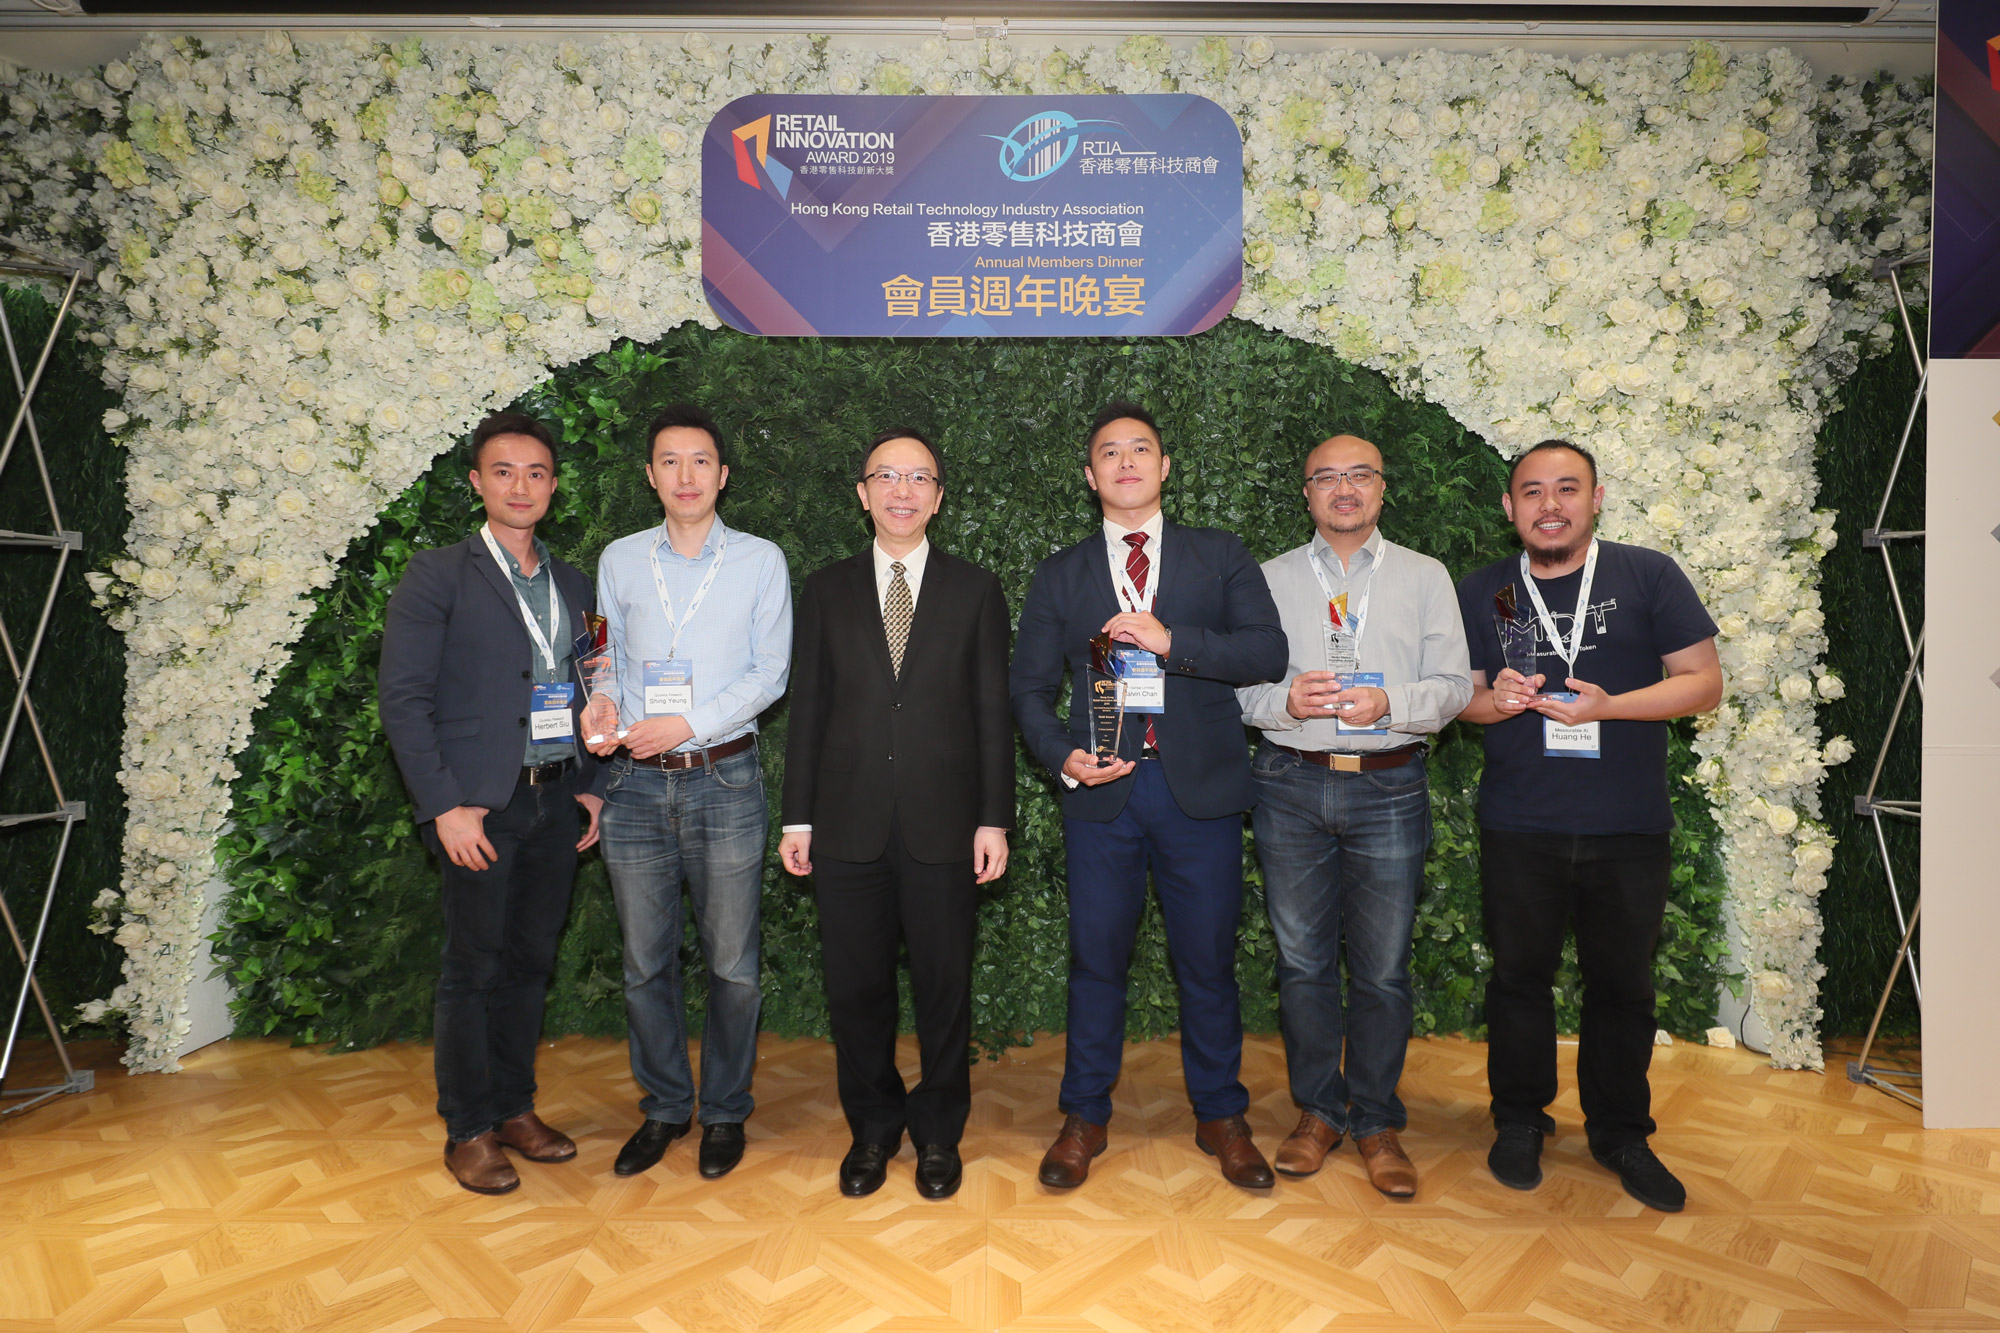 政府资讯科技总监林伟乔先生(左中)于「香港零售科技商会会员周年晚宴暨『2019香港零售科技创新大奖』颁奖典礼」与最佳零售创新产品(初创)大奖 - 初创科技公司组别得奖代表合照